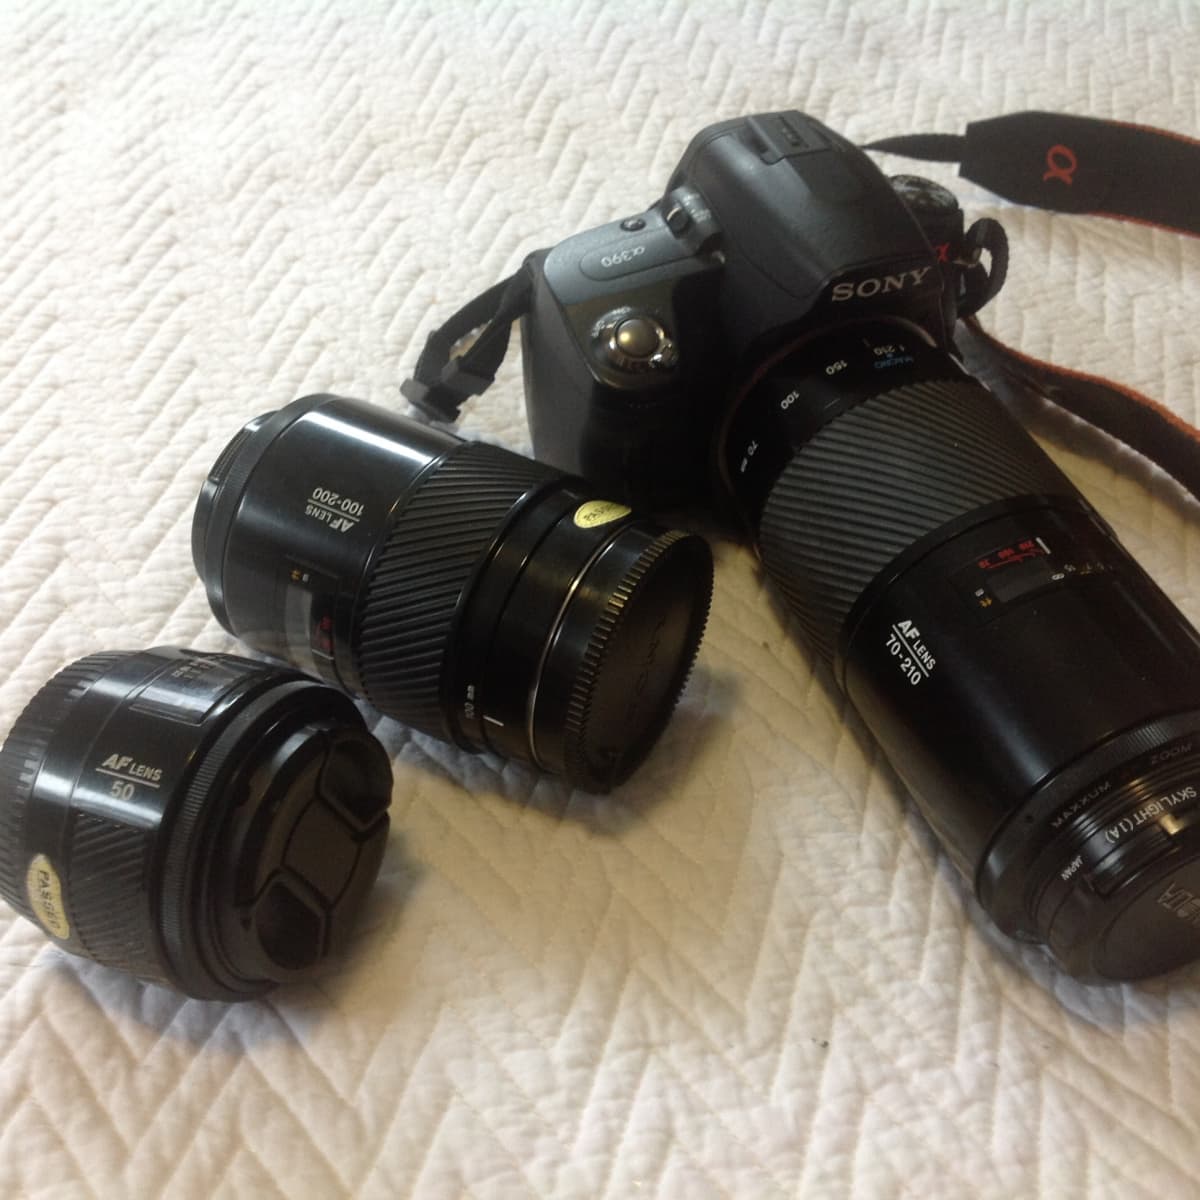 Sony E adapted MINOLTA MAXXUM 100-200 mm f4.5 Telephoto ZOOM Lens